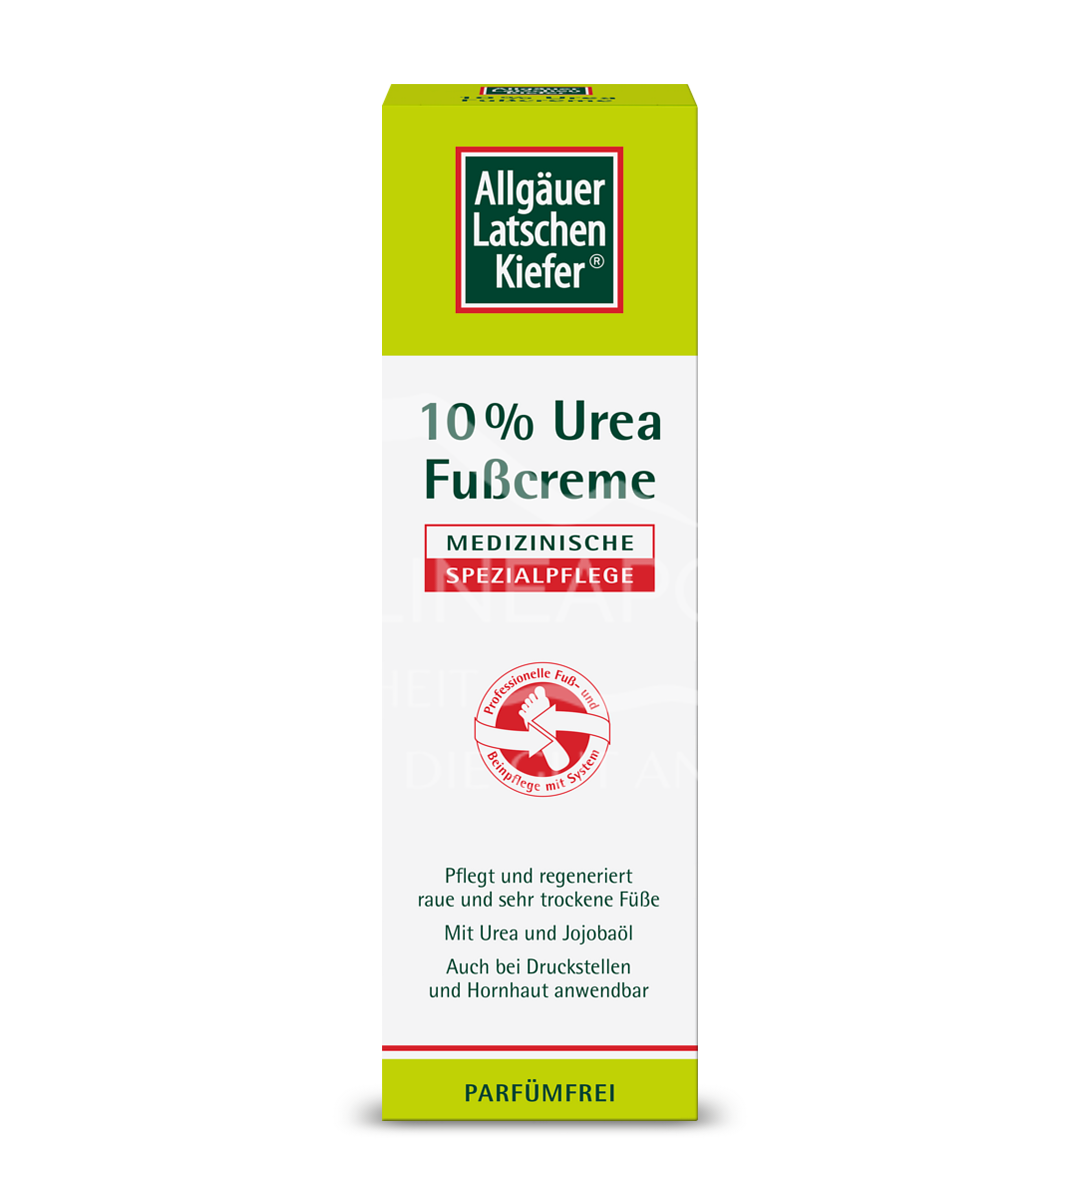 Allgäuer Latschenkiefer® 10 % Urea Fußcreme